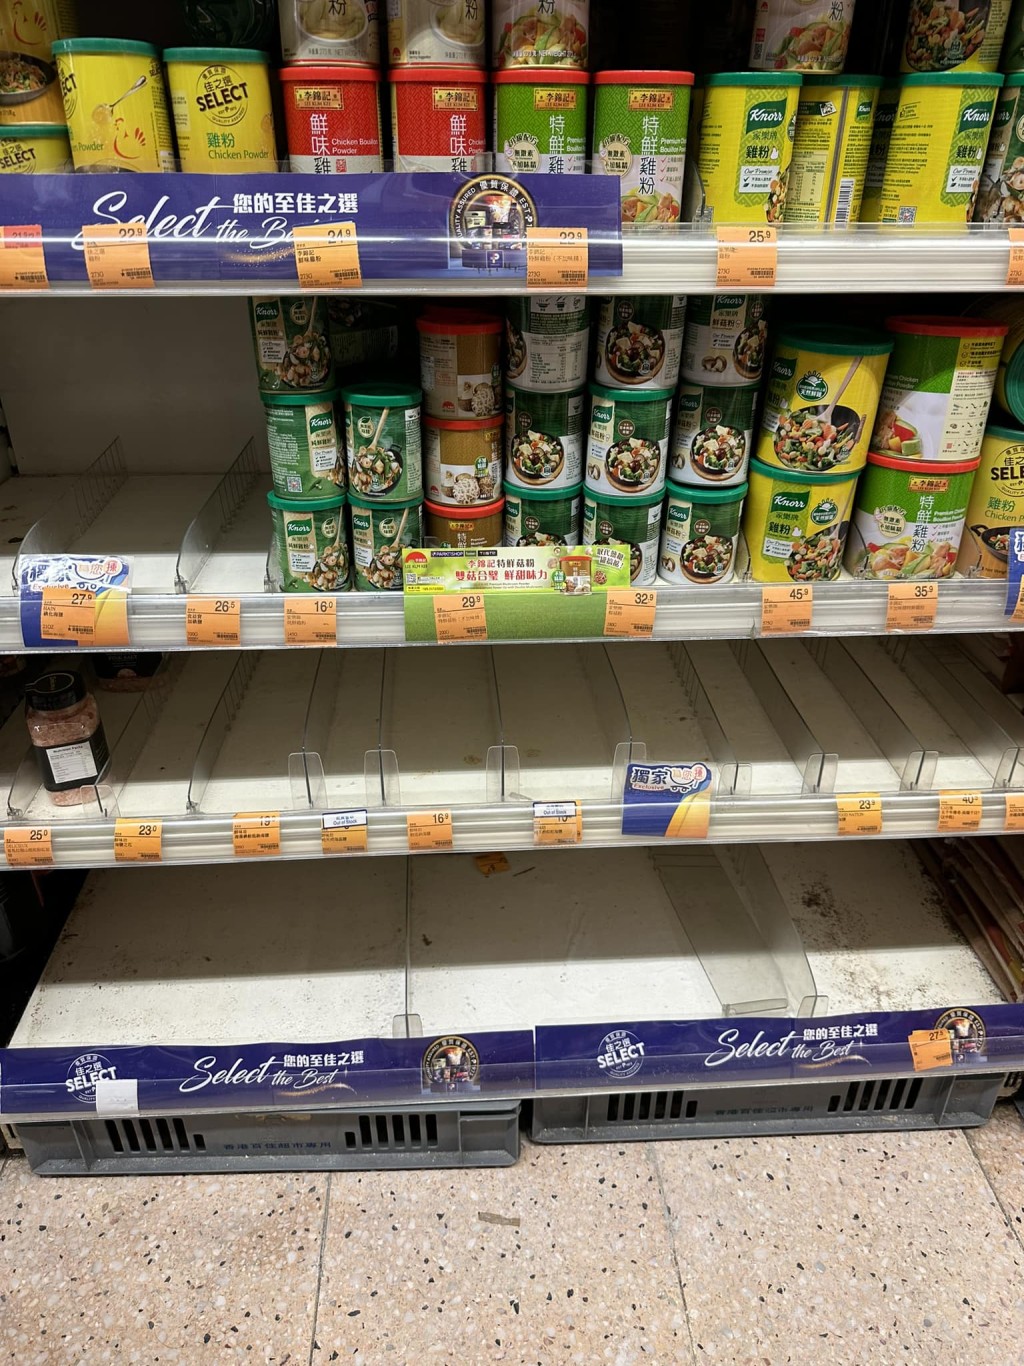 有网民发现超巿食盐货架被抢购一空。超级巿场优惠关注组FB图片